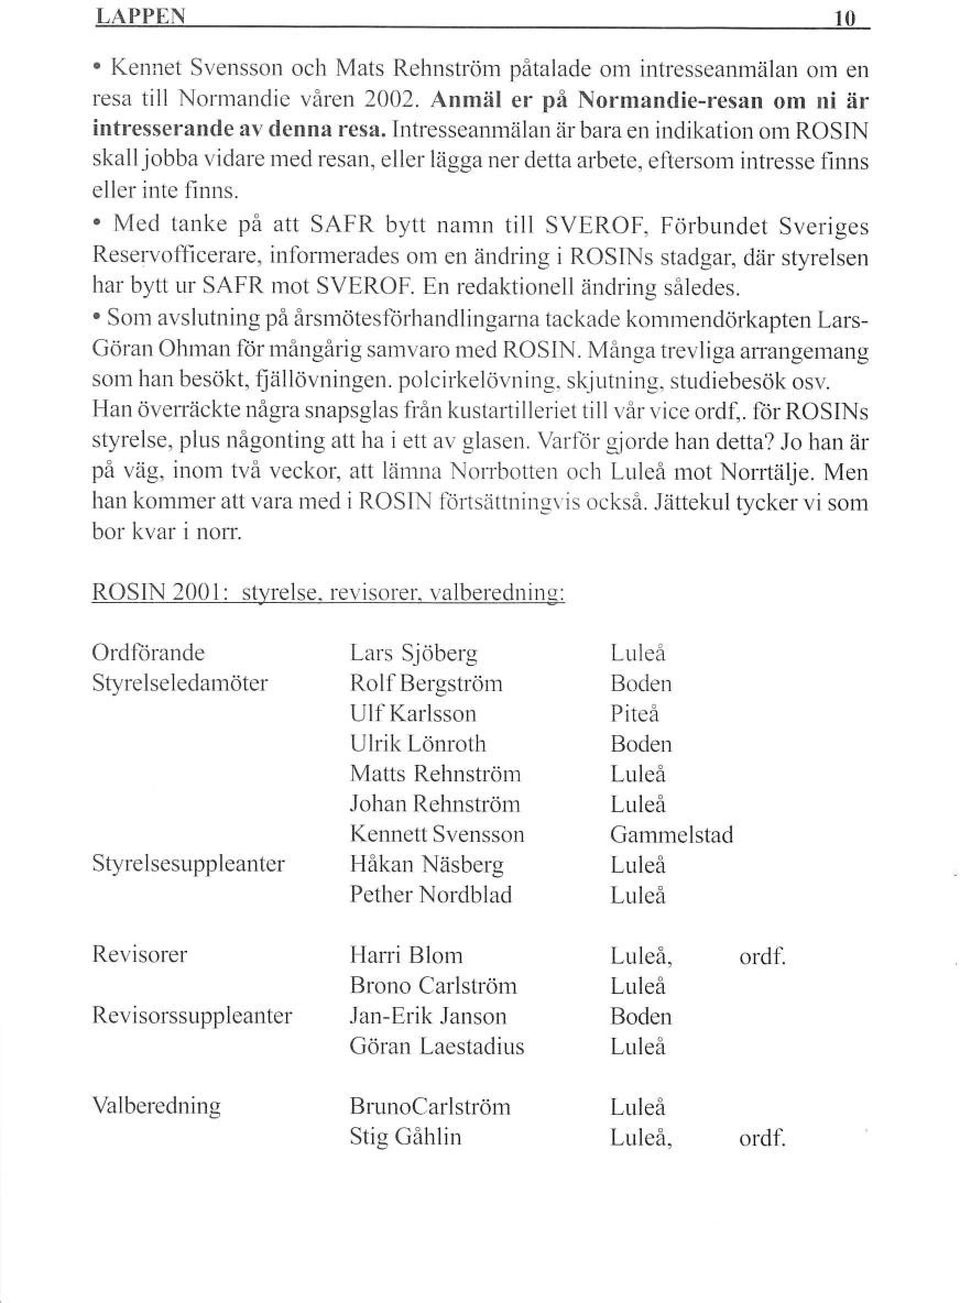 Med lanke på att SAFR bytt namn till SVEROF, Förbundet Sveriges Reservofl'icerare, inlonnerades om en änddng i ROSINS stadgar, där styrelsen har bytl ur SAFR mot SVEROF.